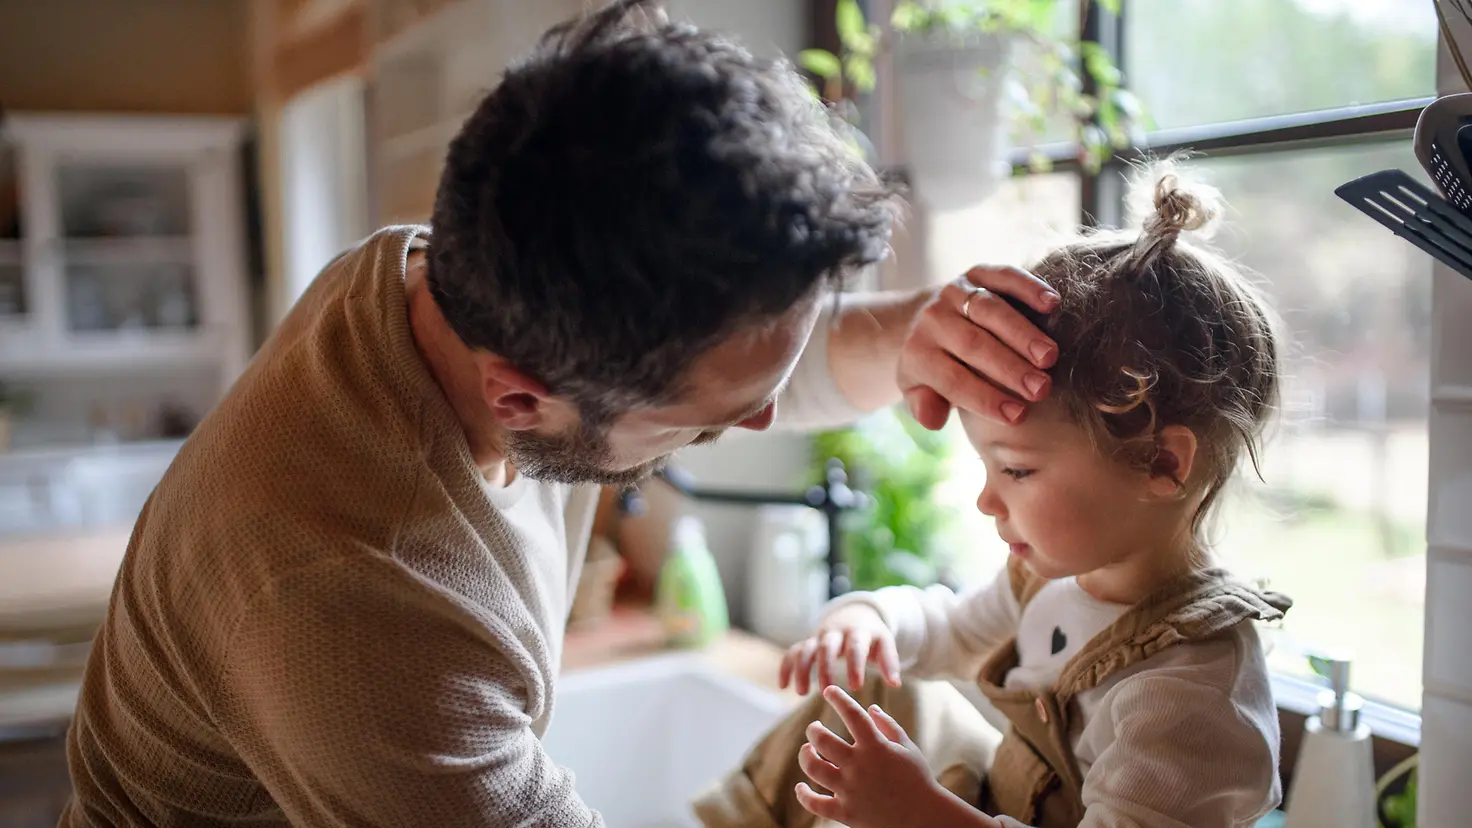 Ein Kind sitzt auf einer Küchenanrichte. Ein Mann steht vor ihm und legt seine Hand auf die Stirn des Kindes.